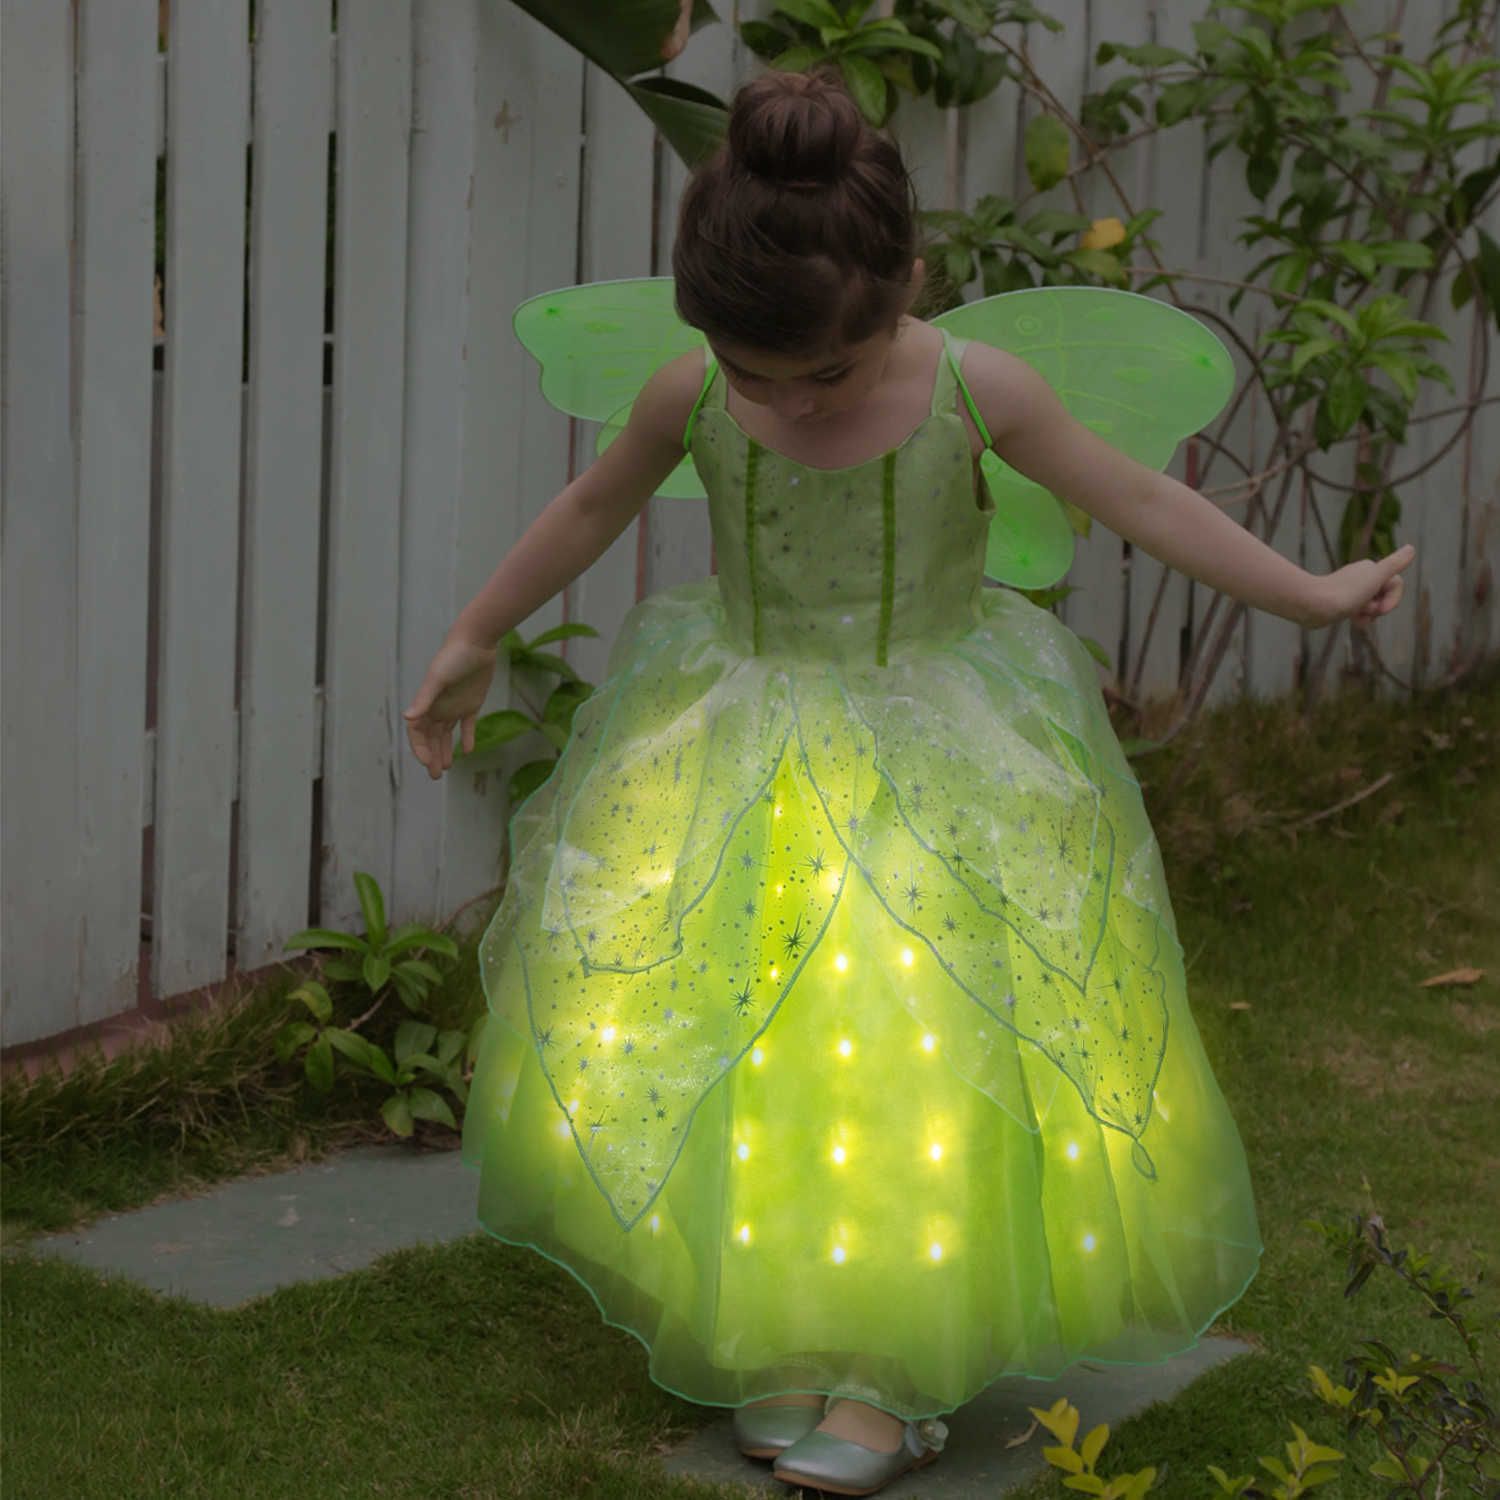 led dress